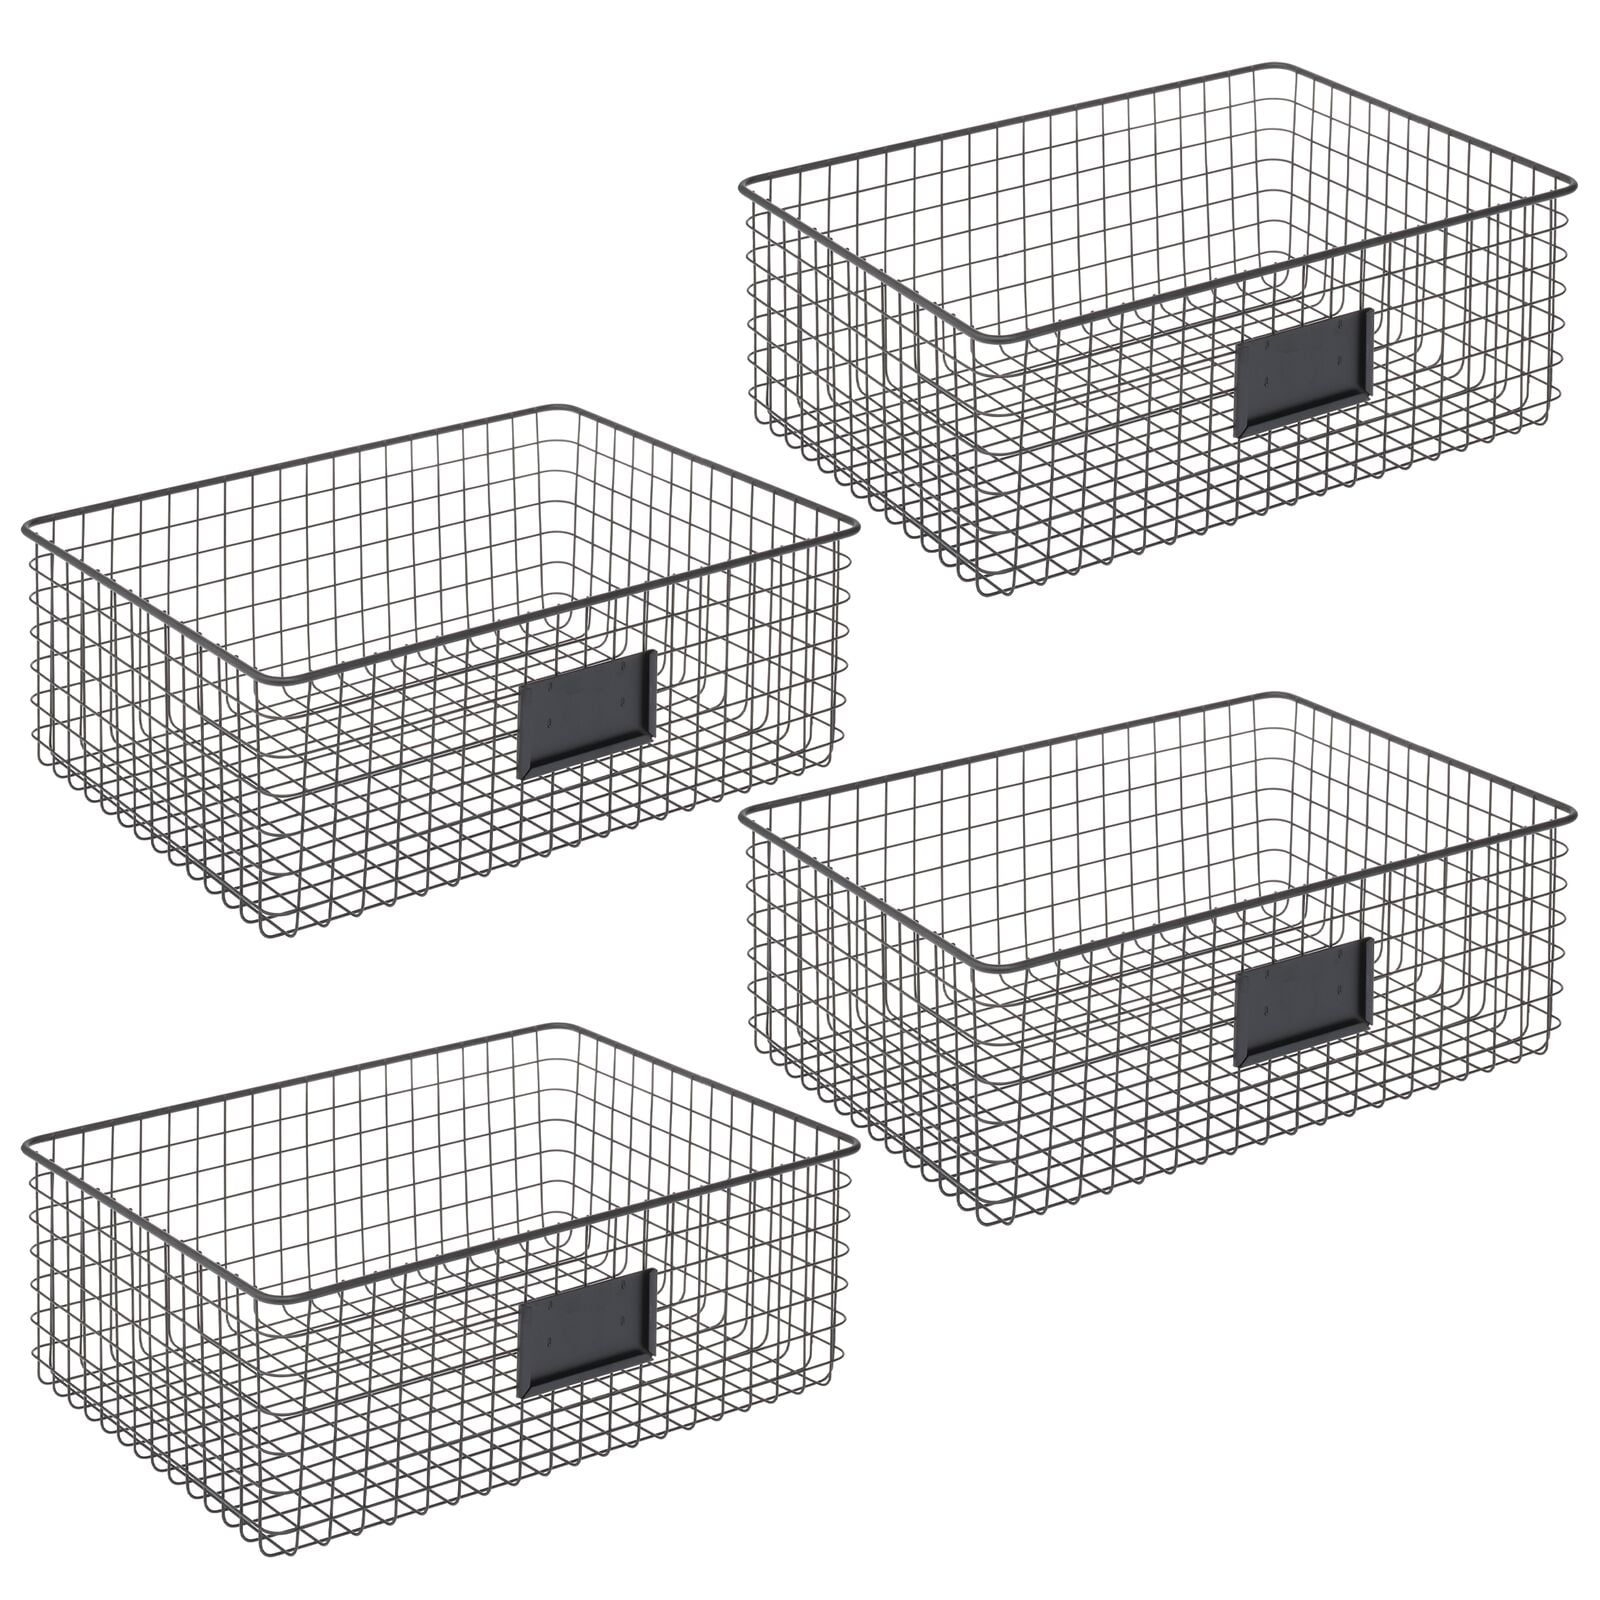 mDesign Metal Wire Food Organizer Storage Bins with Handles Dark Gray 